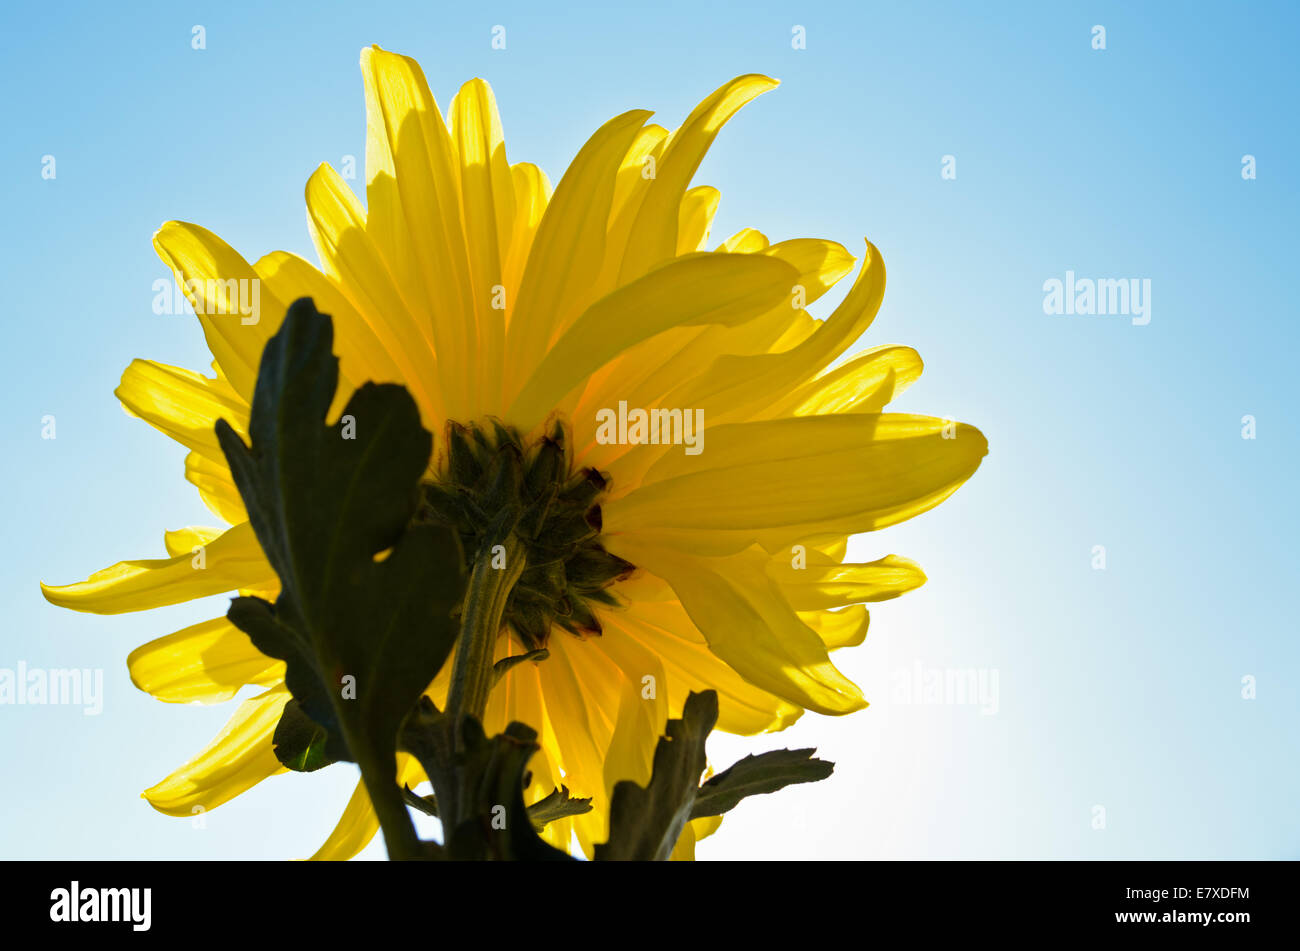 Yellow chrysanthemum flower blossom in the sunlight Stock Photo